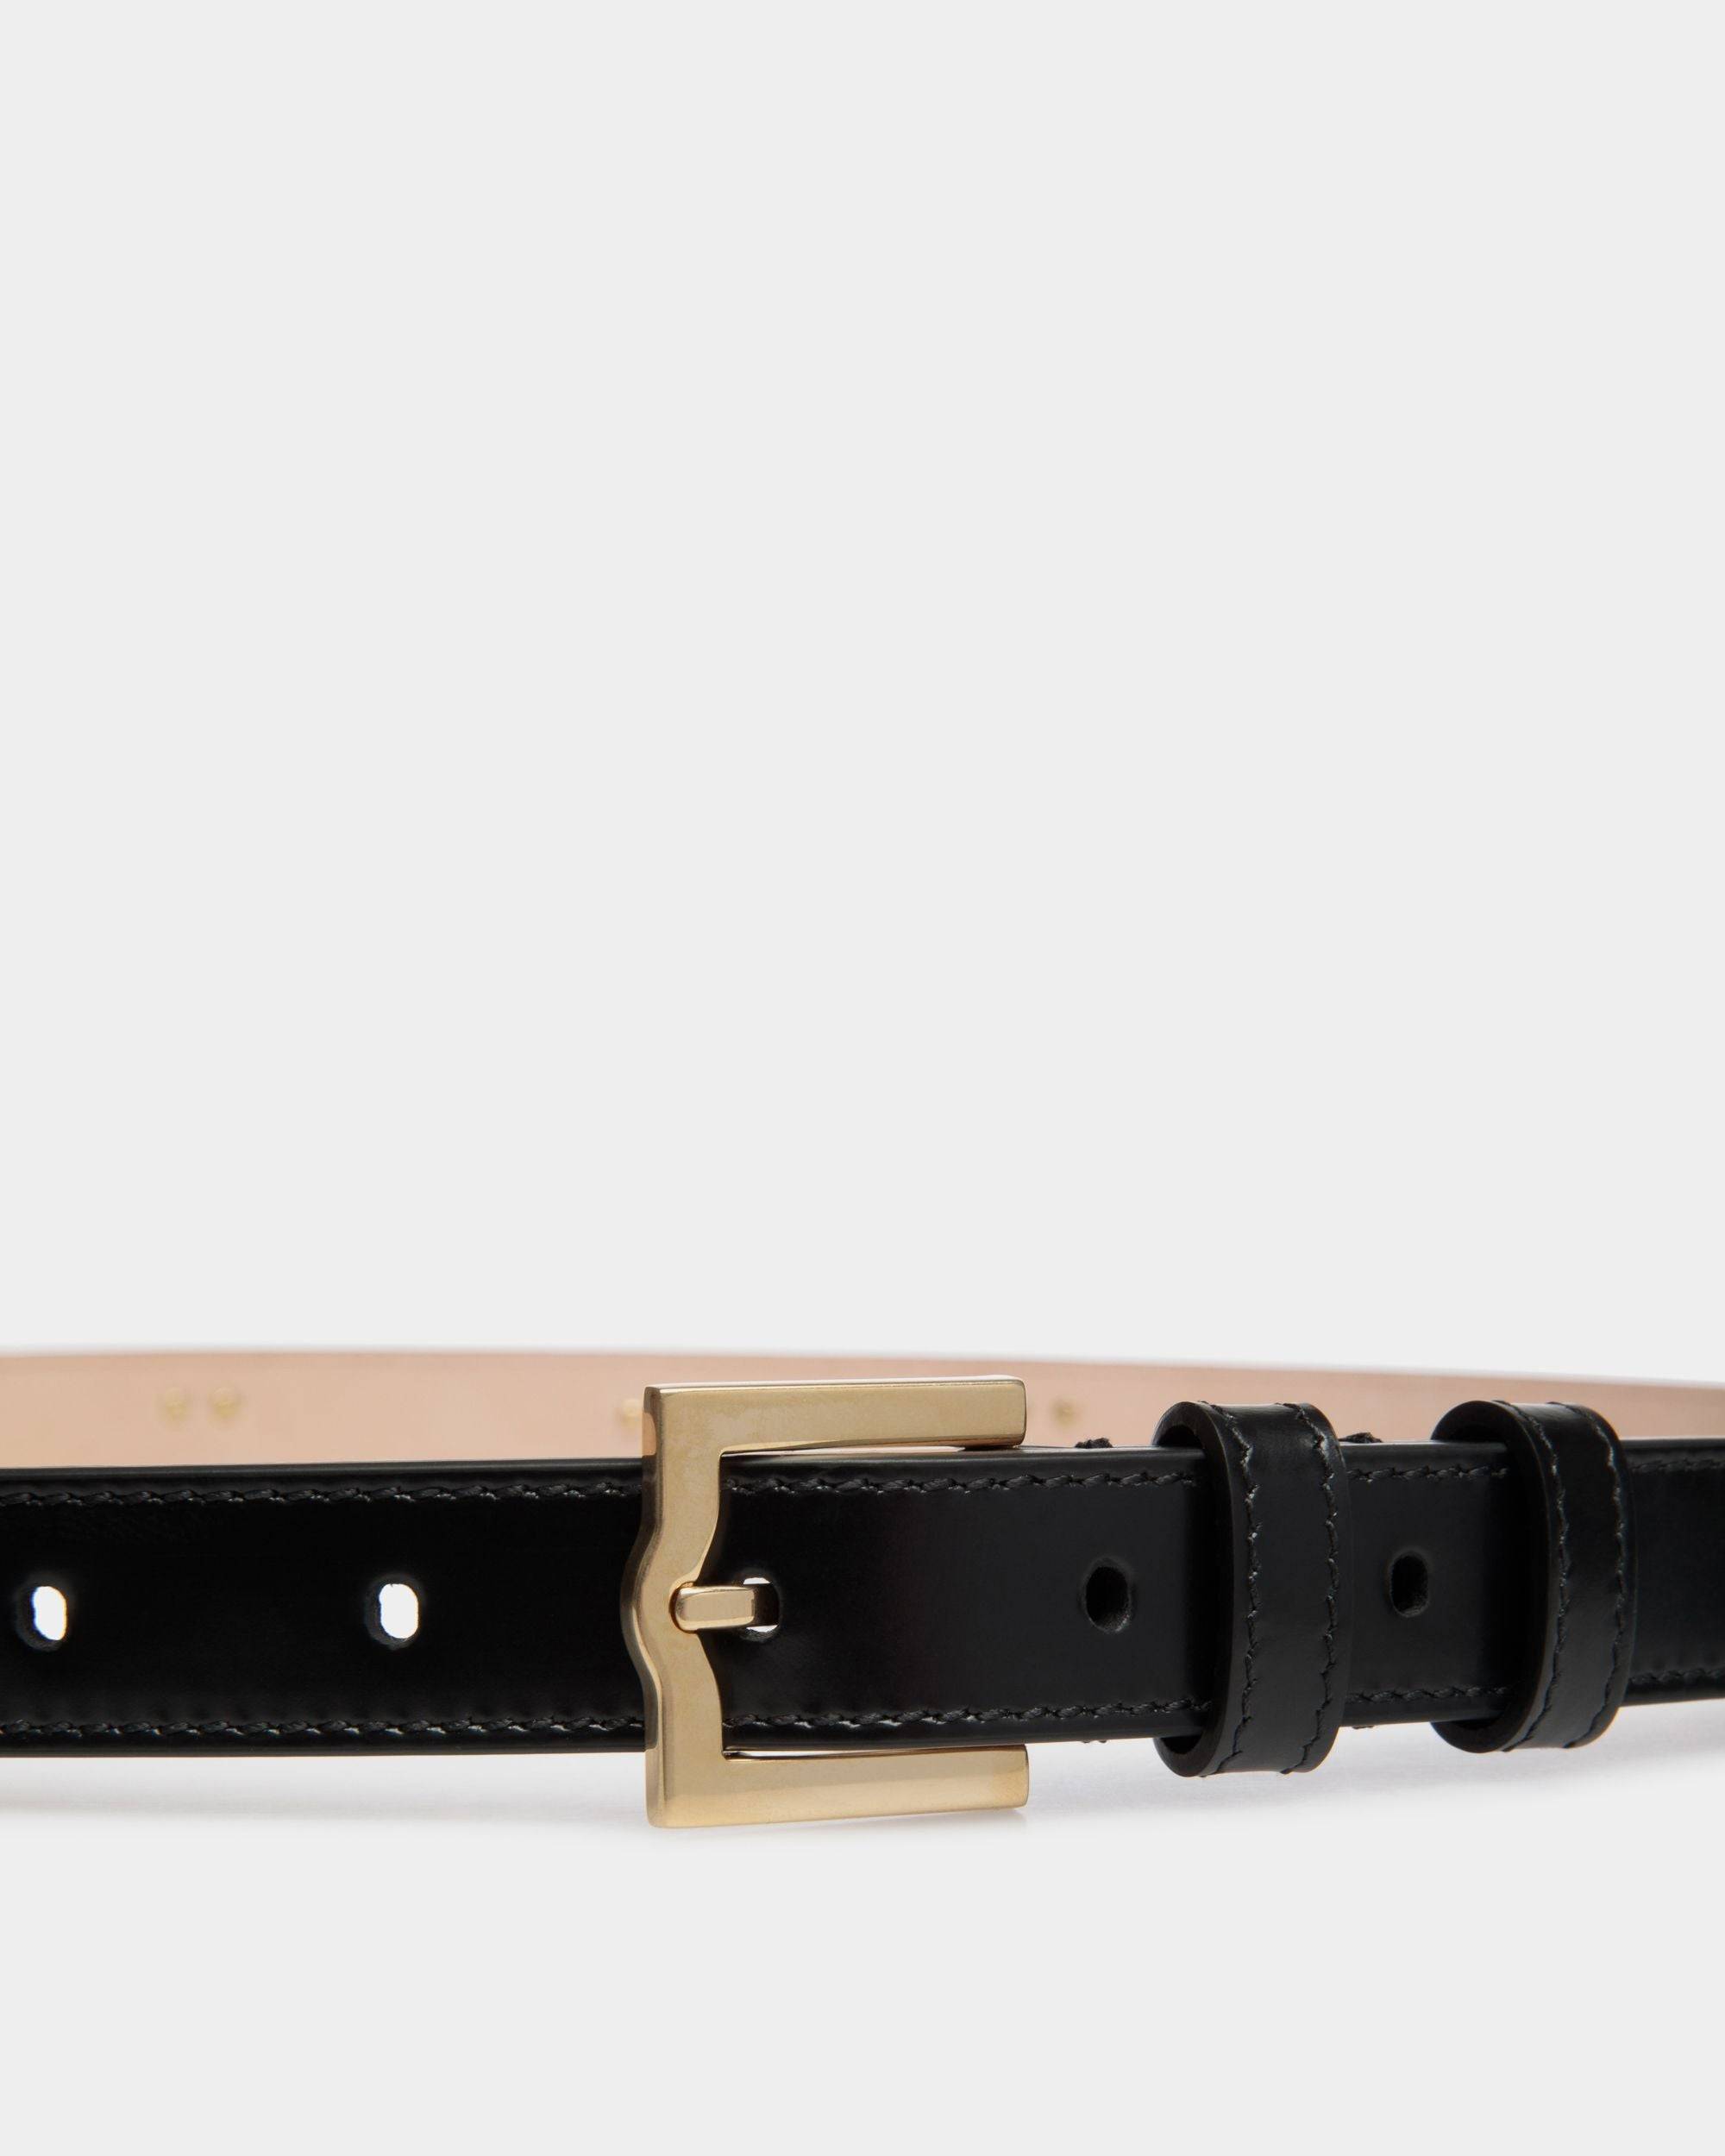 Emblem 95 cm | Women's Belt in Black Brushed Leather | Bally | On Model Front